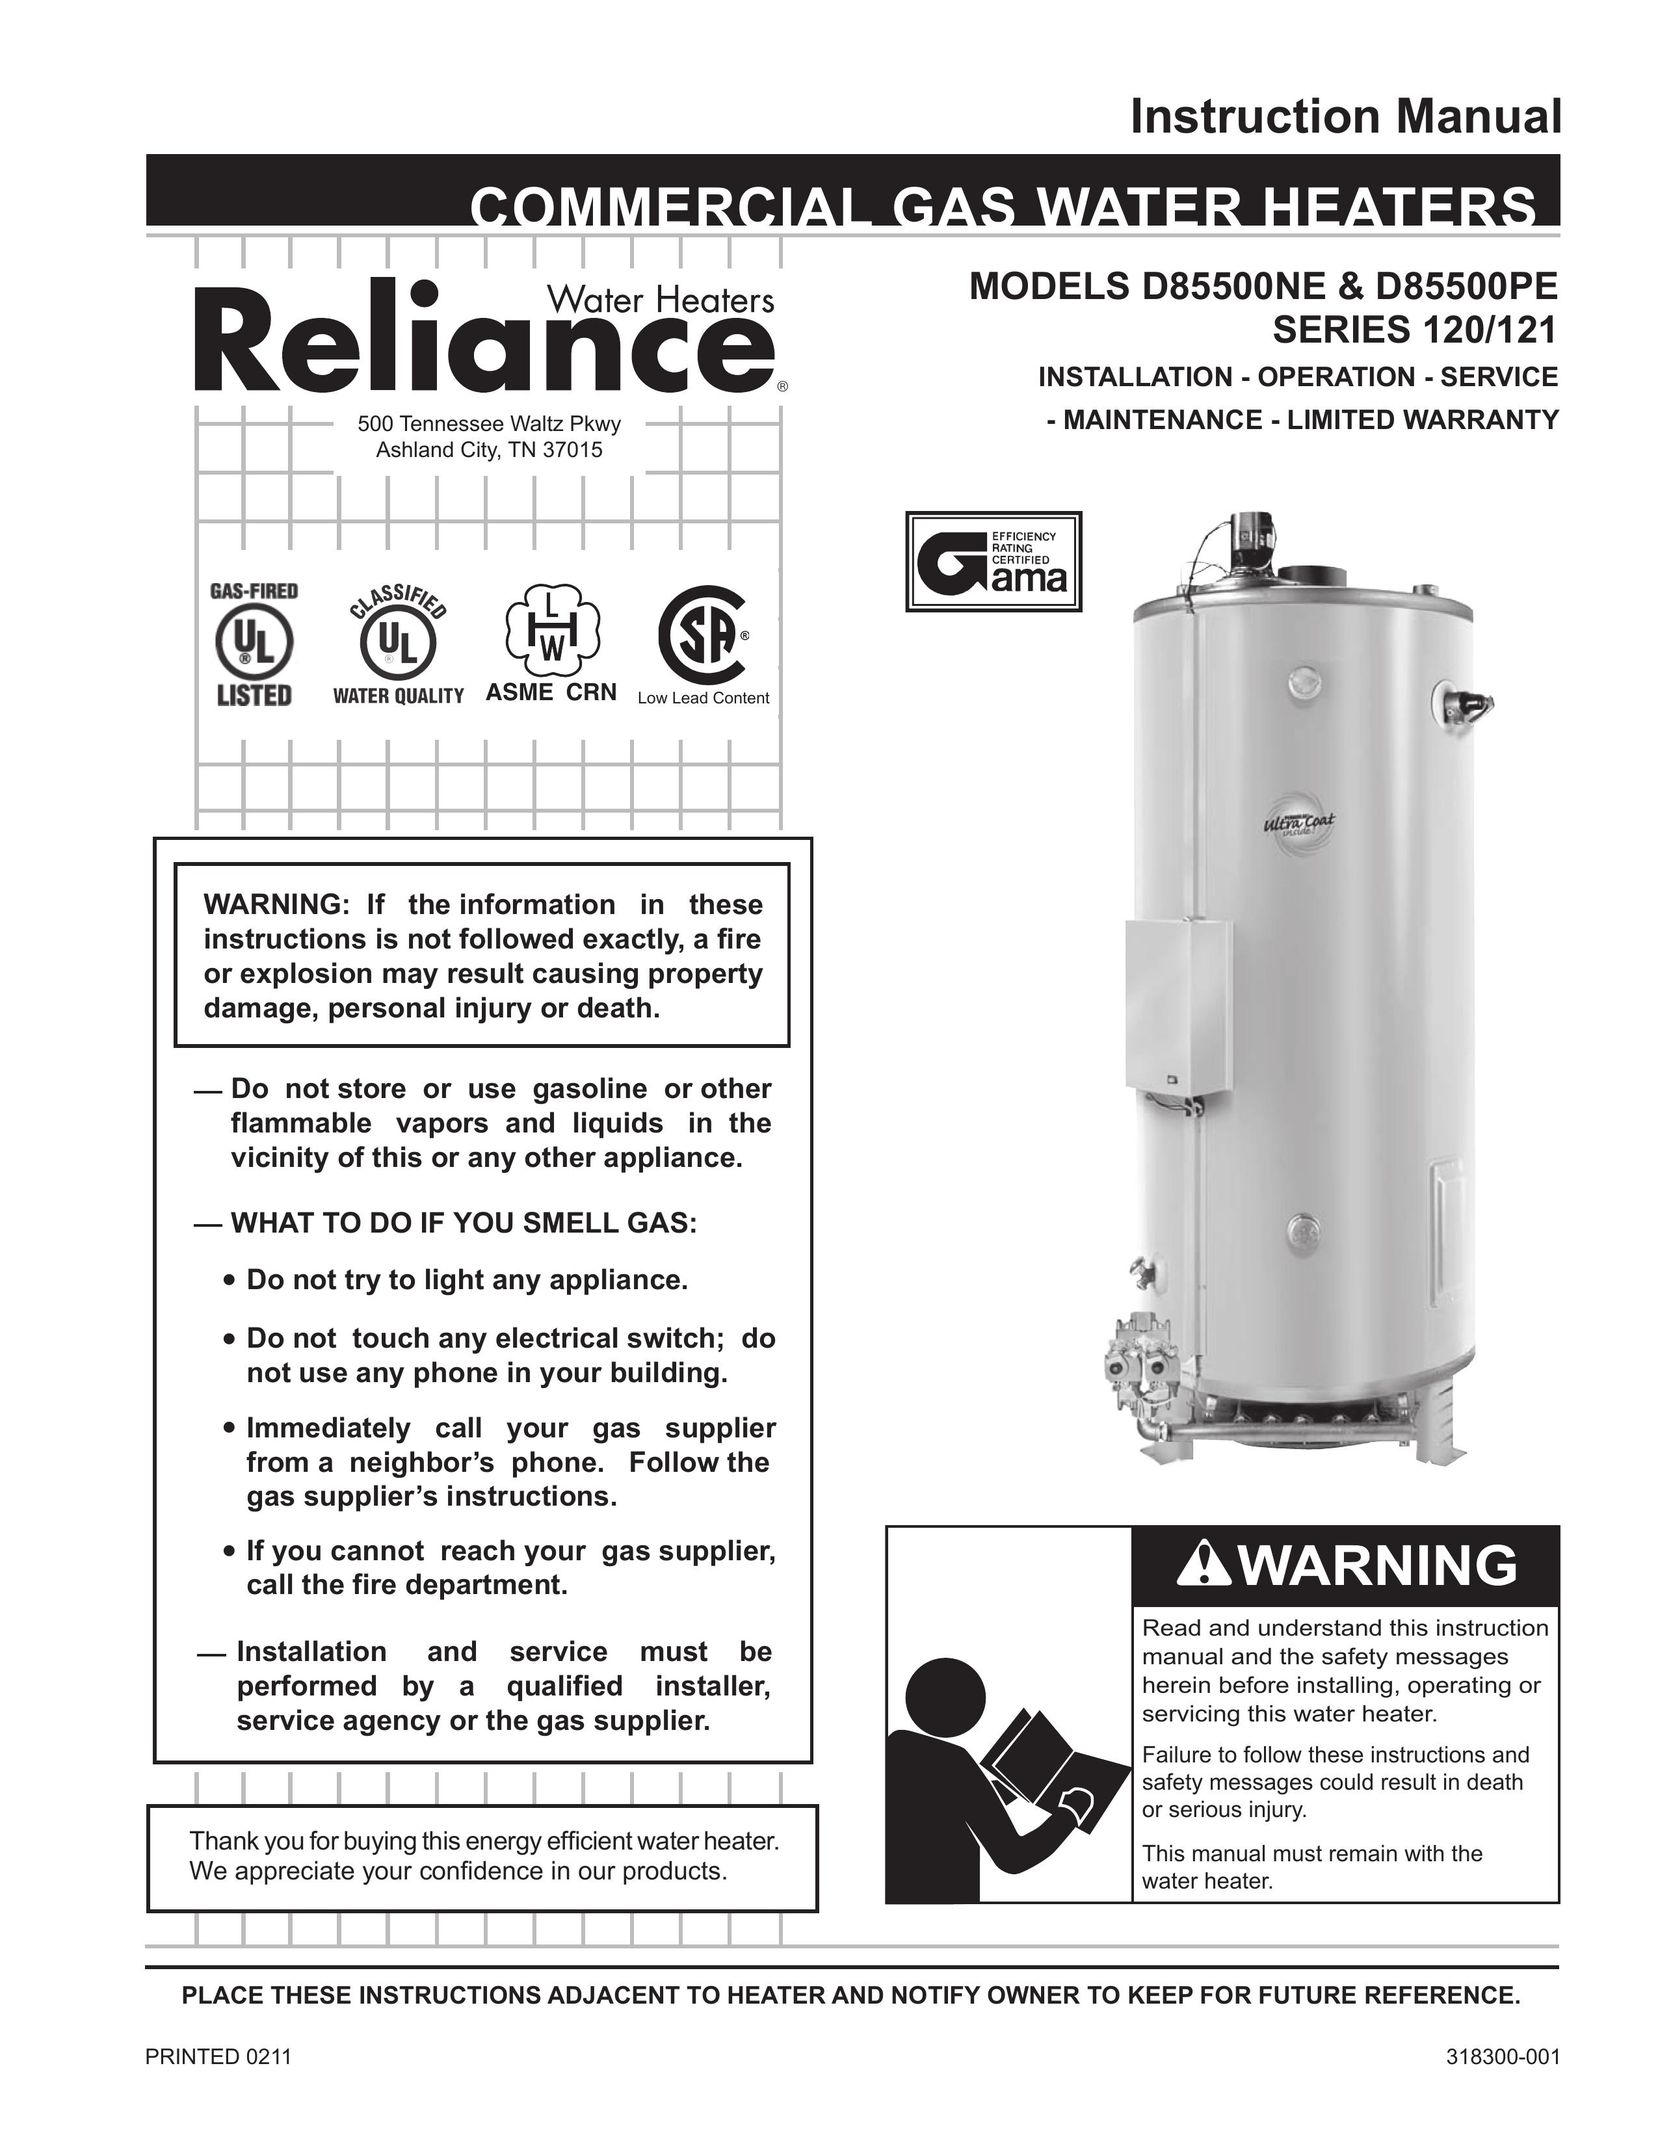 Reliance Water Heaters D85500NE Water Heater User Manual